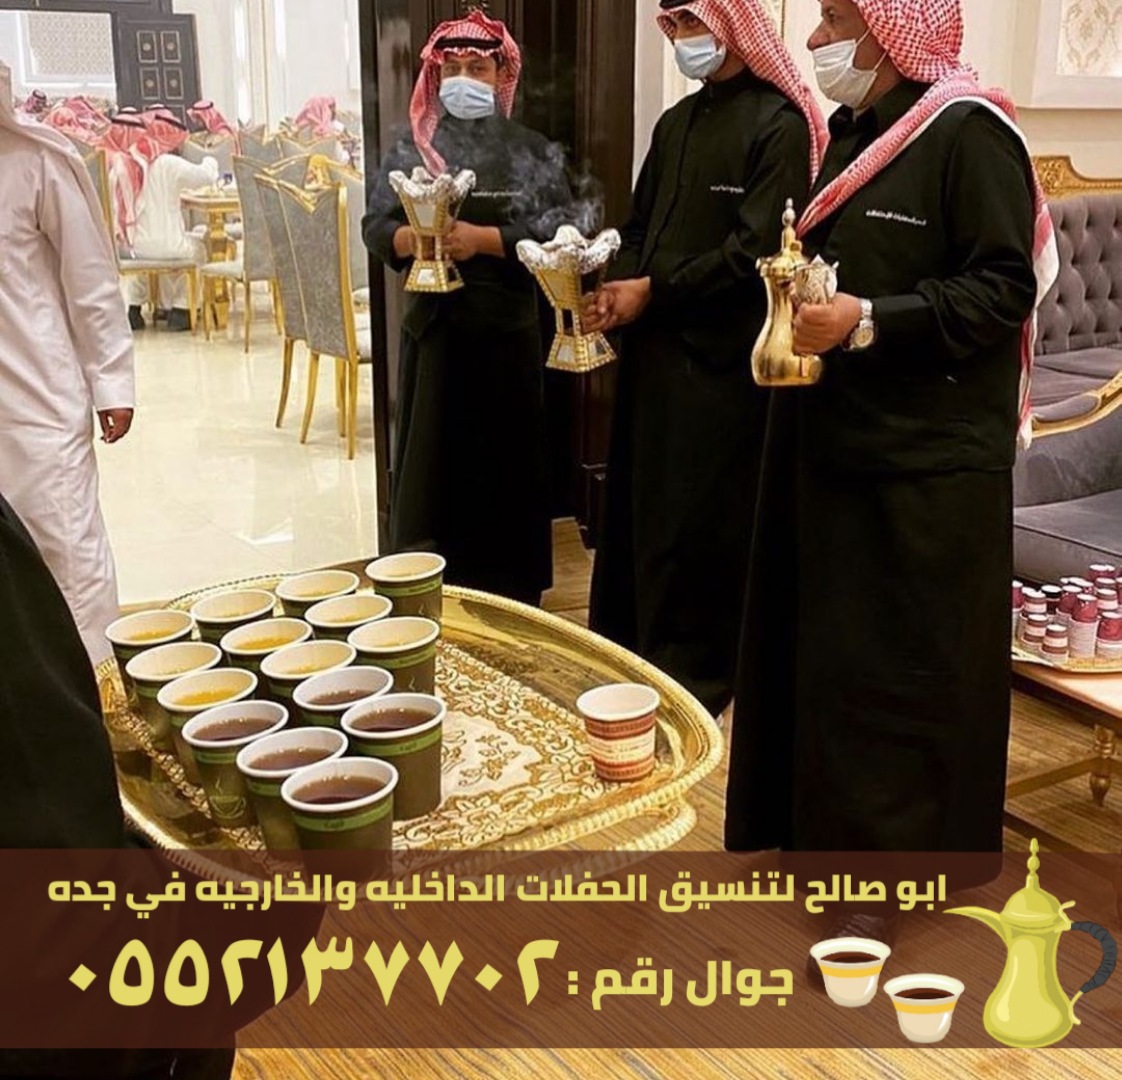 فريق صبابين قهوة للضيافة في جدة, 0552137702 P_263698l2r6